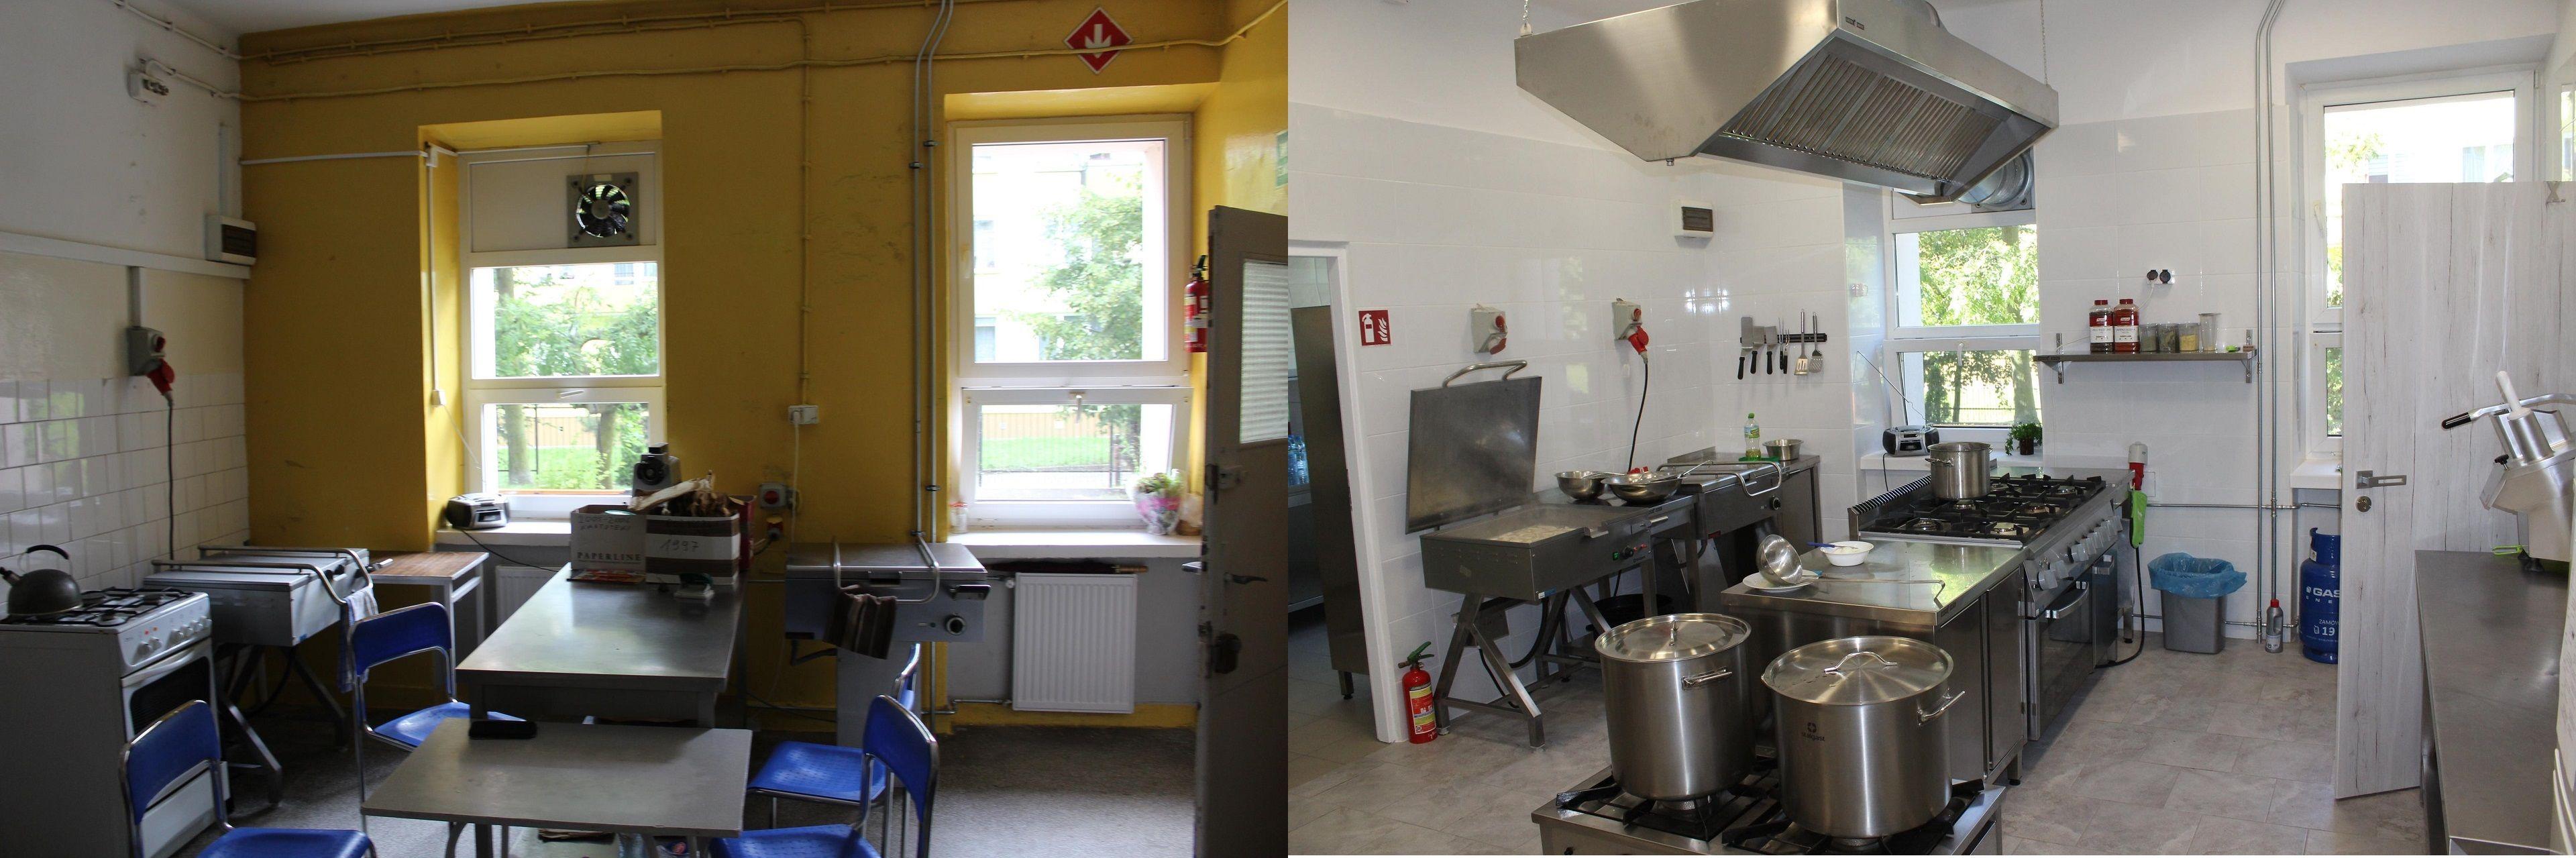 Obrazek porównawczy przed i po remoncie stołówki w Szkole Podstawowej nr 3 w Lipnie - kliknięcie spowoduje powiększenie zdjęcia